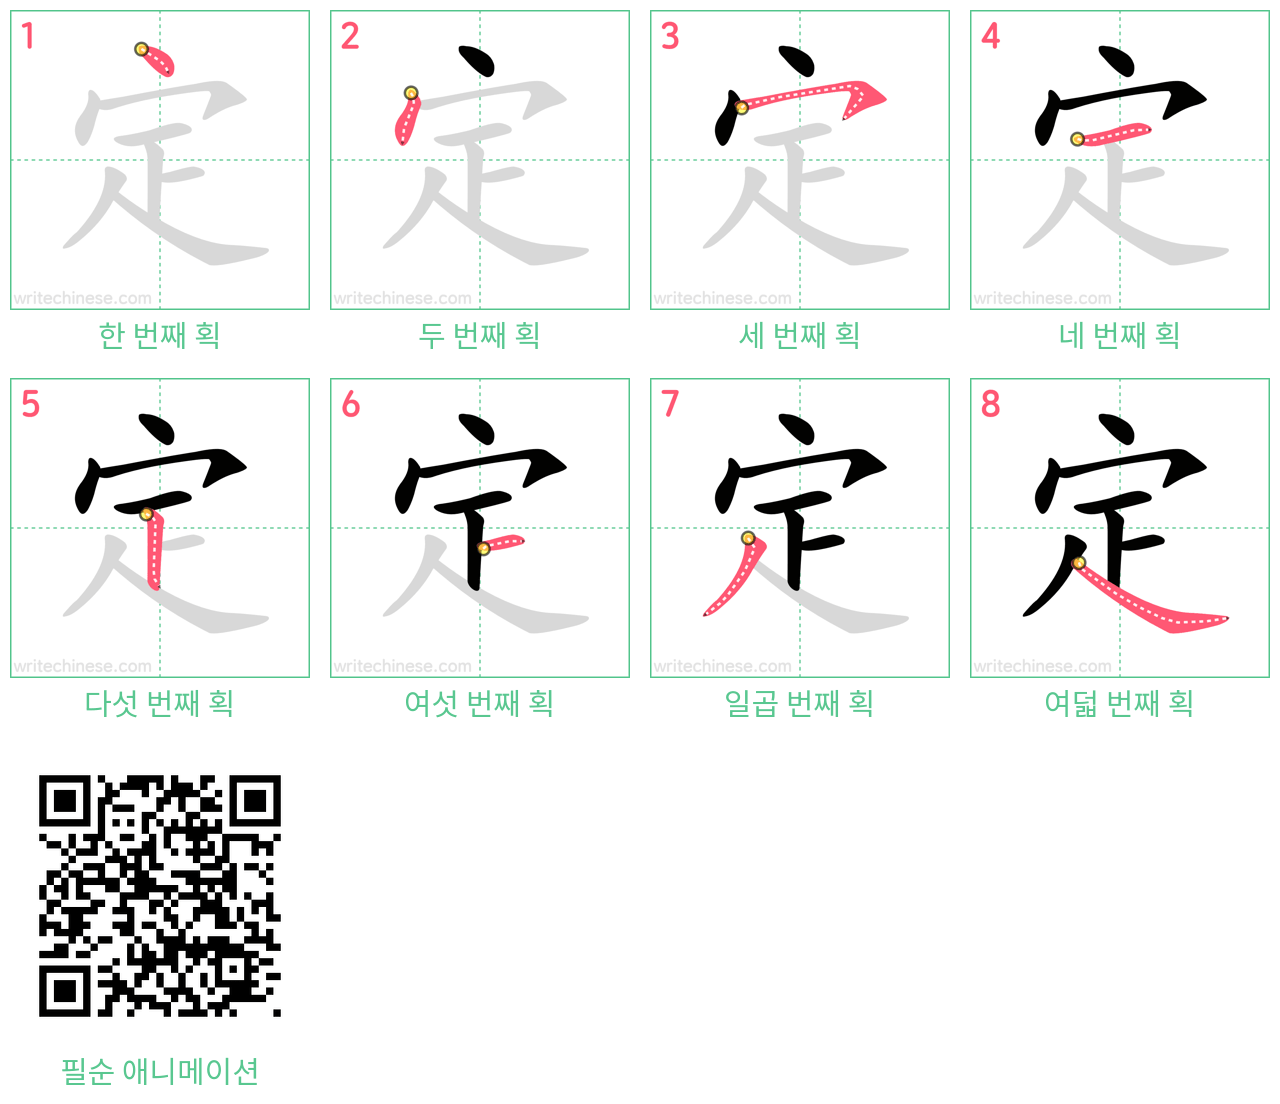 定 step-by-step stroke order diagrams